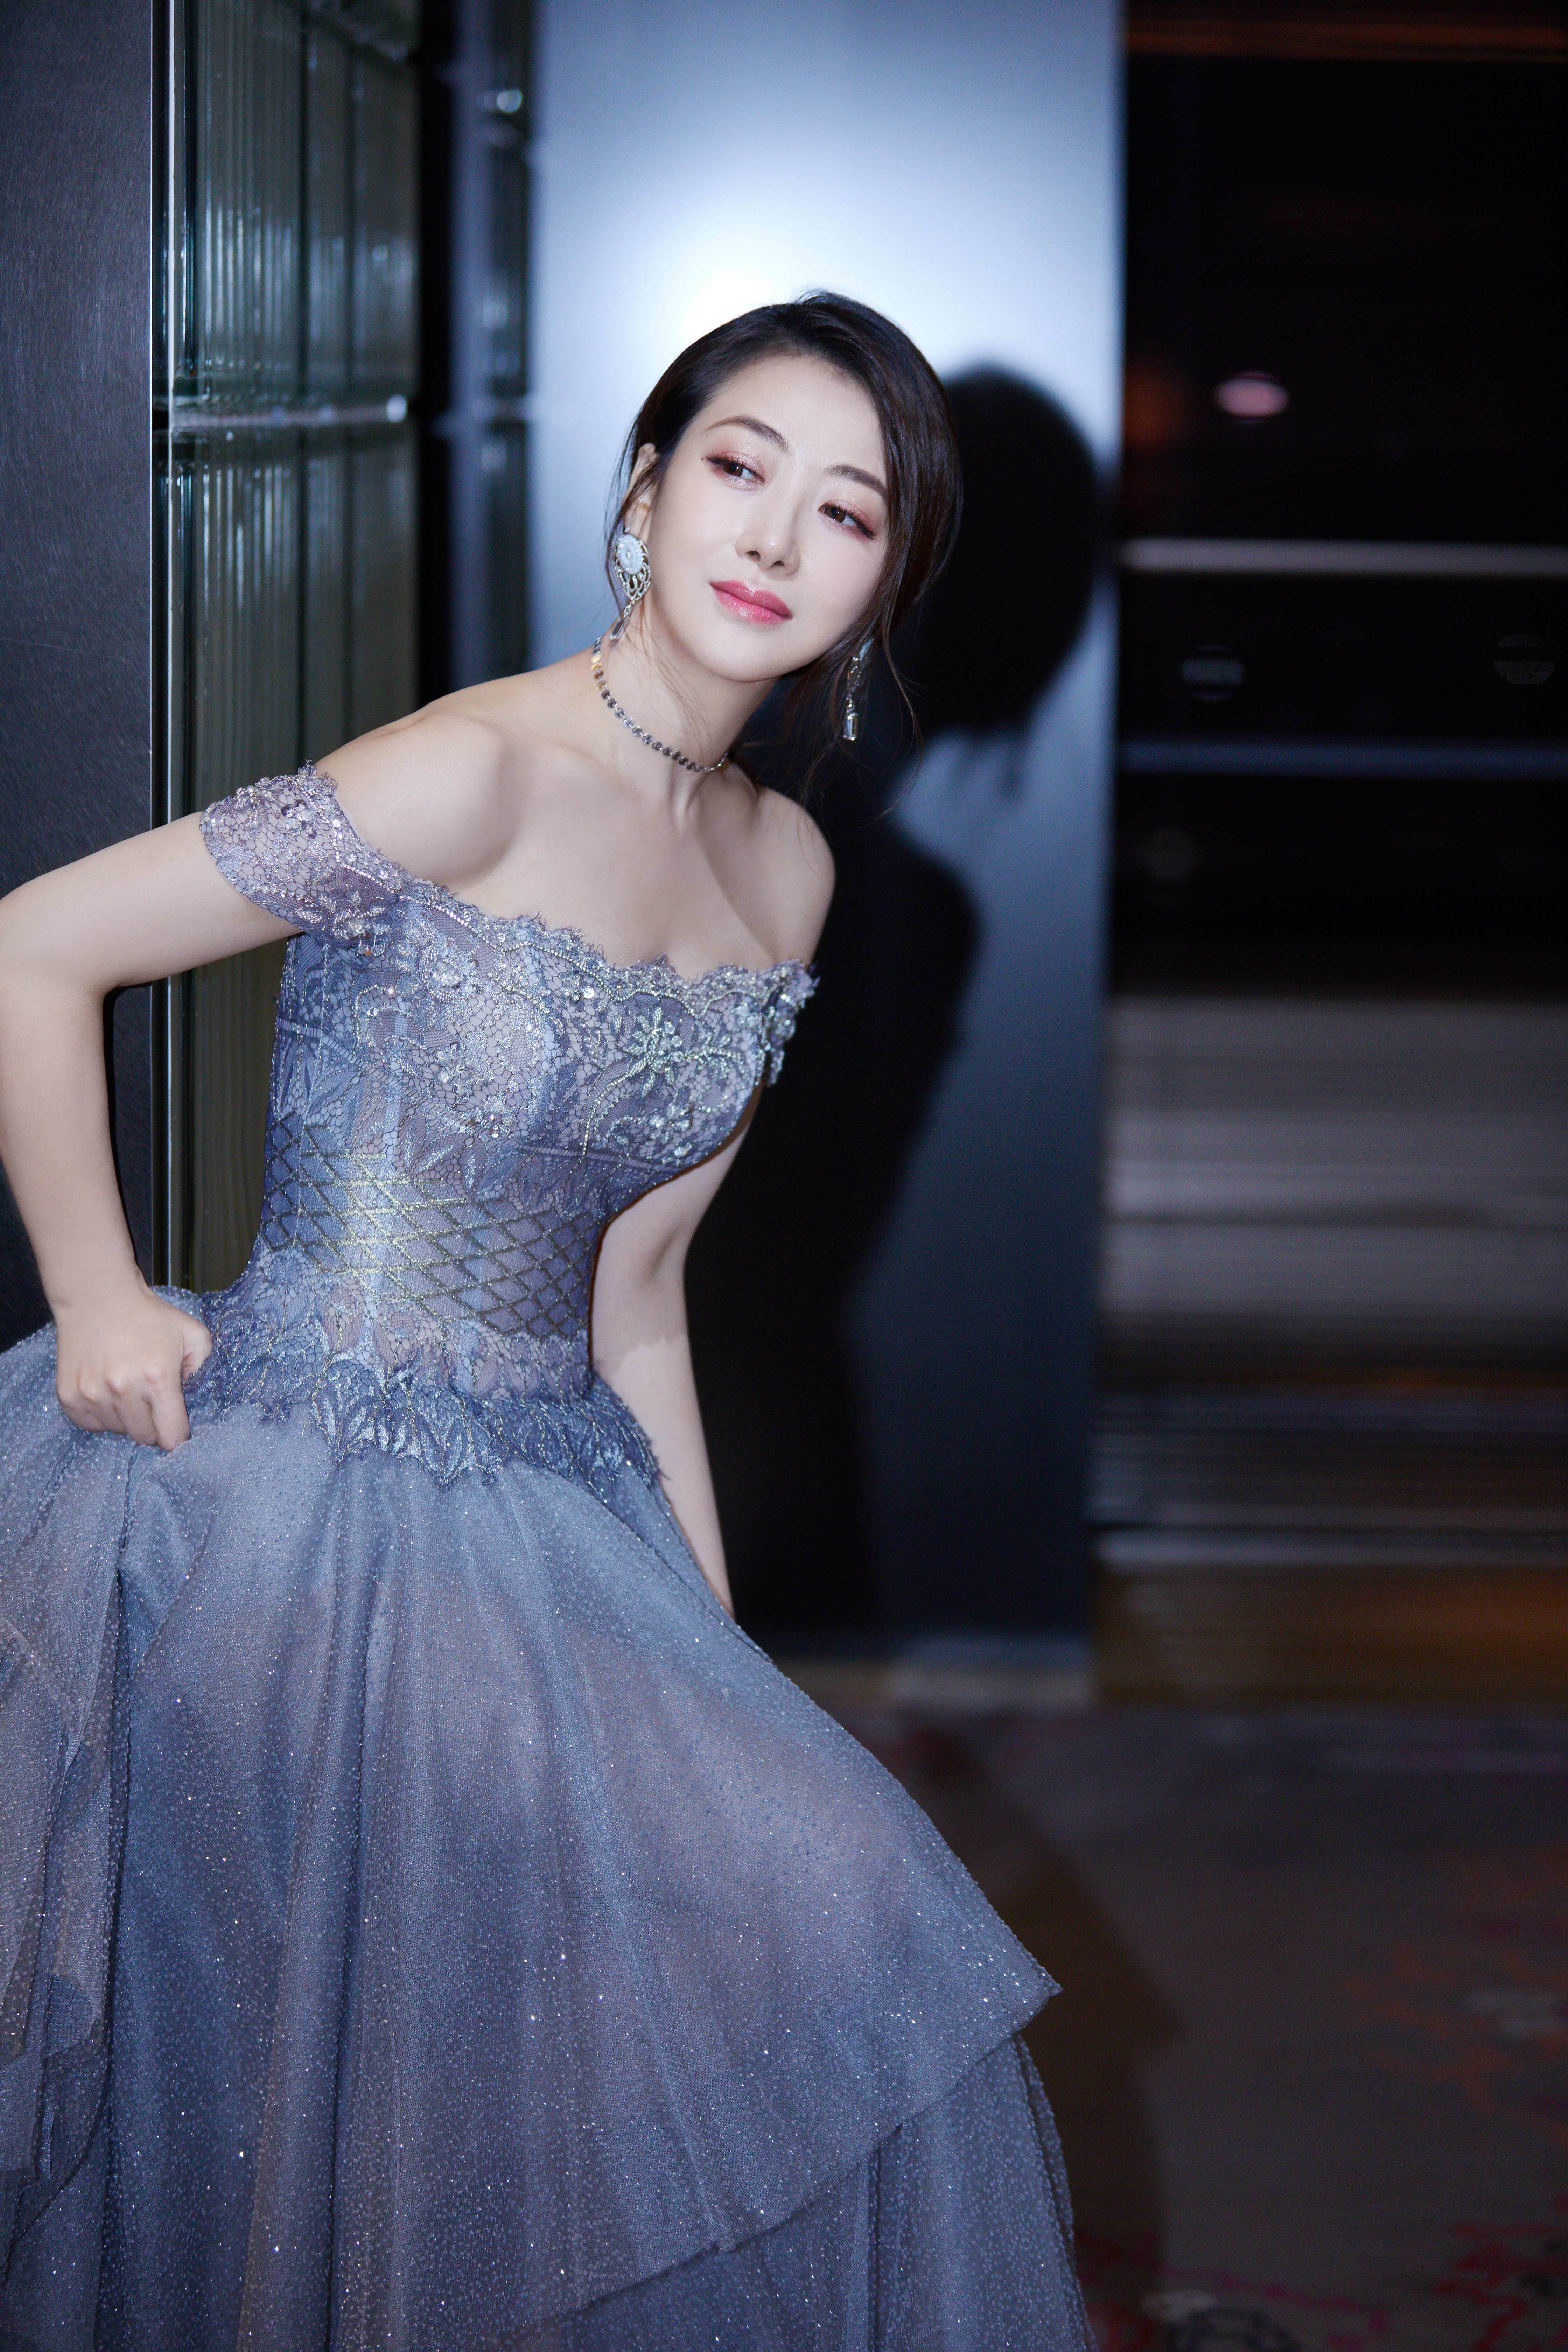 演员陈紫函身穿淡蓝色星空纱裙搭配造型独特的耳环出镜,裙子收腰的